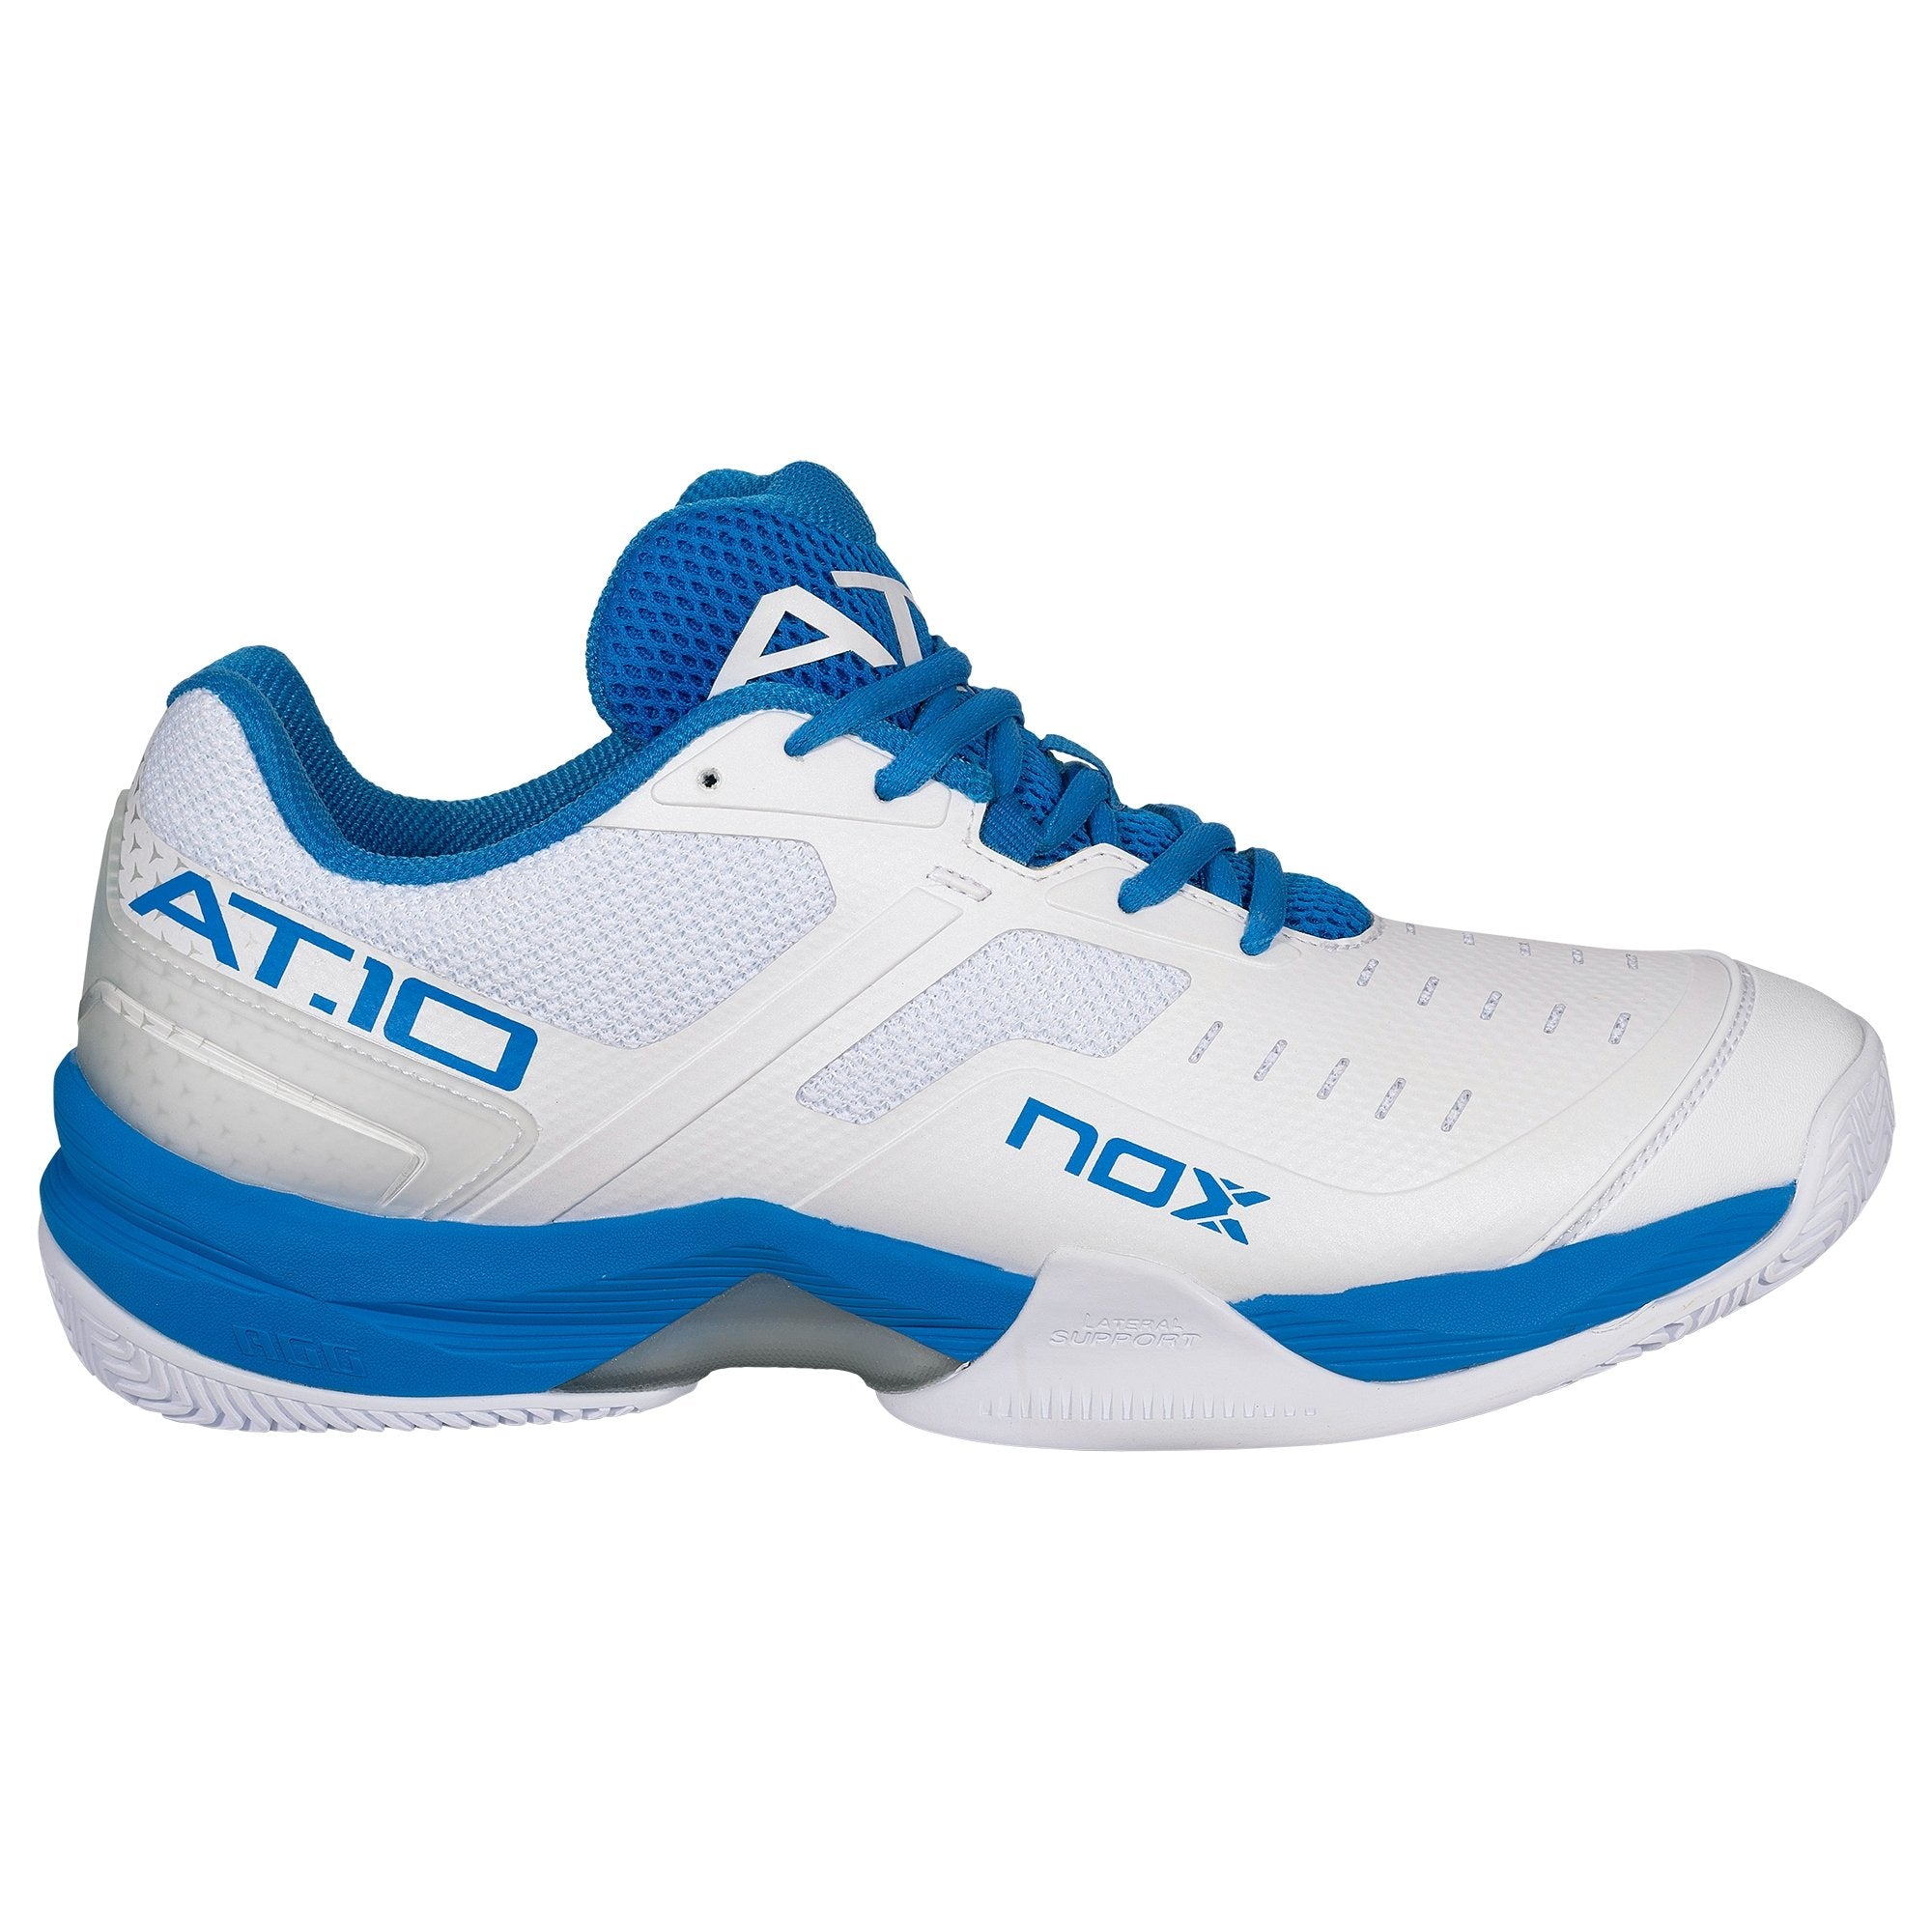 Zapatillas de Pádel Nox AT10 Blanco/Azul - NOX